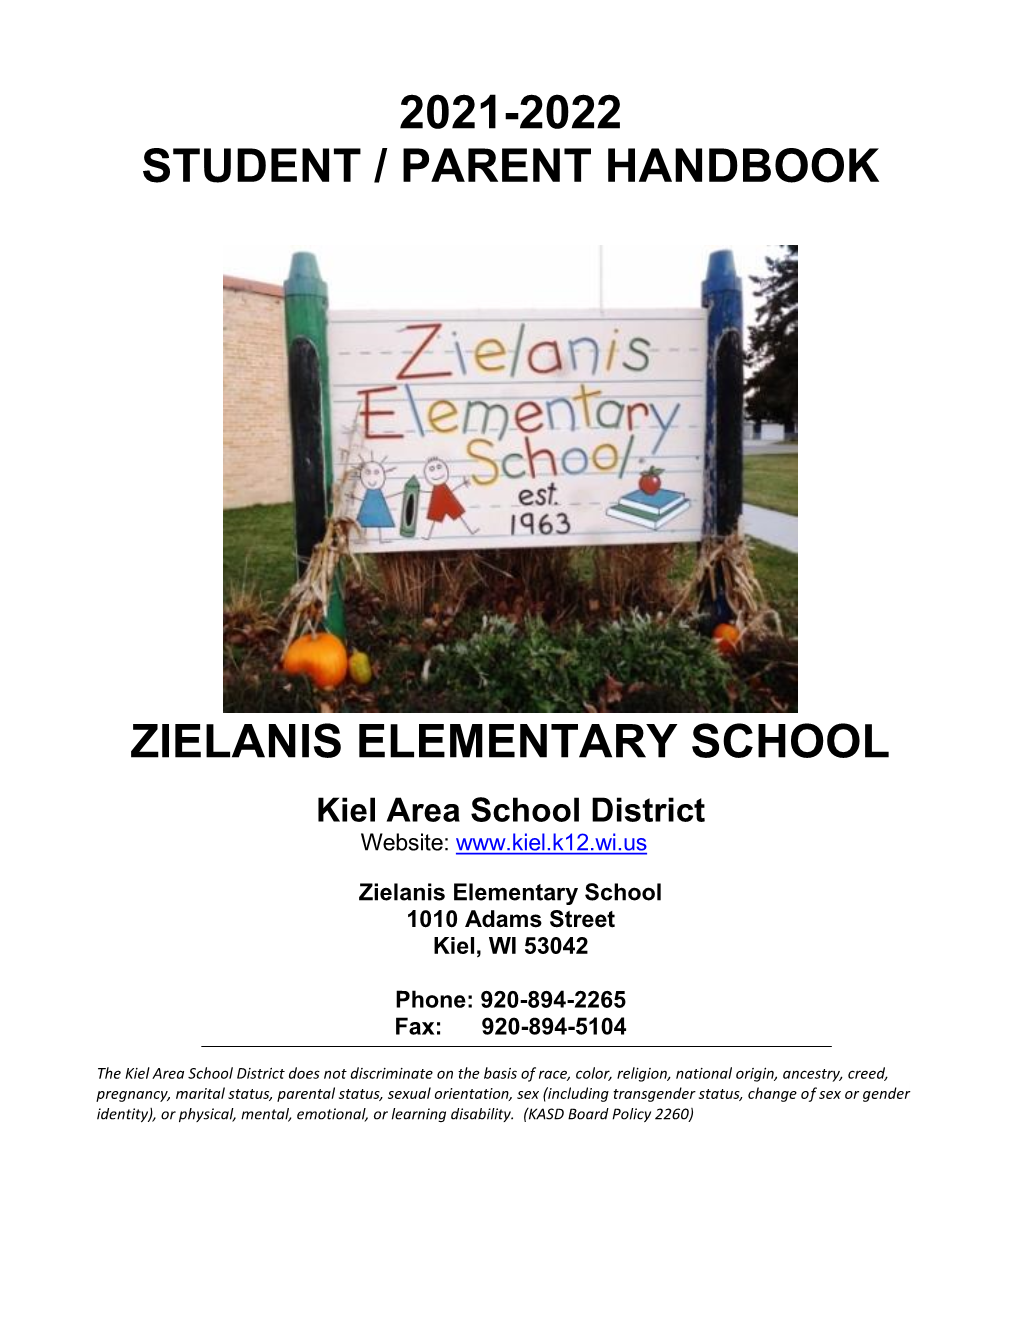 2021-2022 Student / Parent Handbook Zielanis